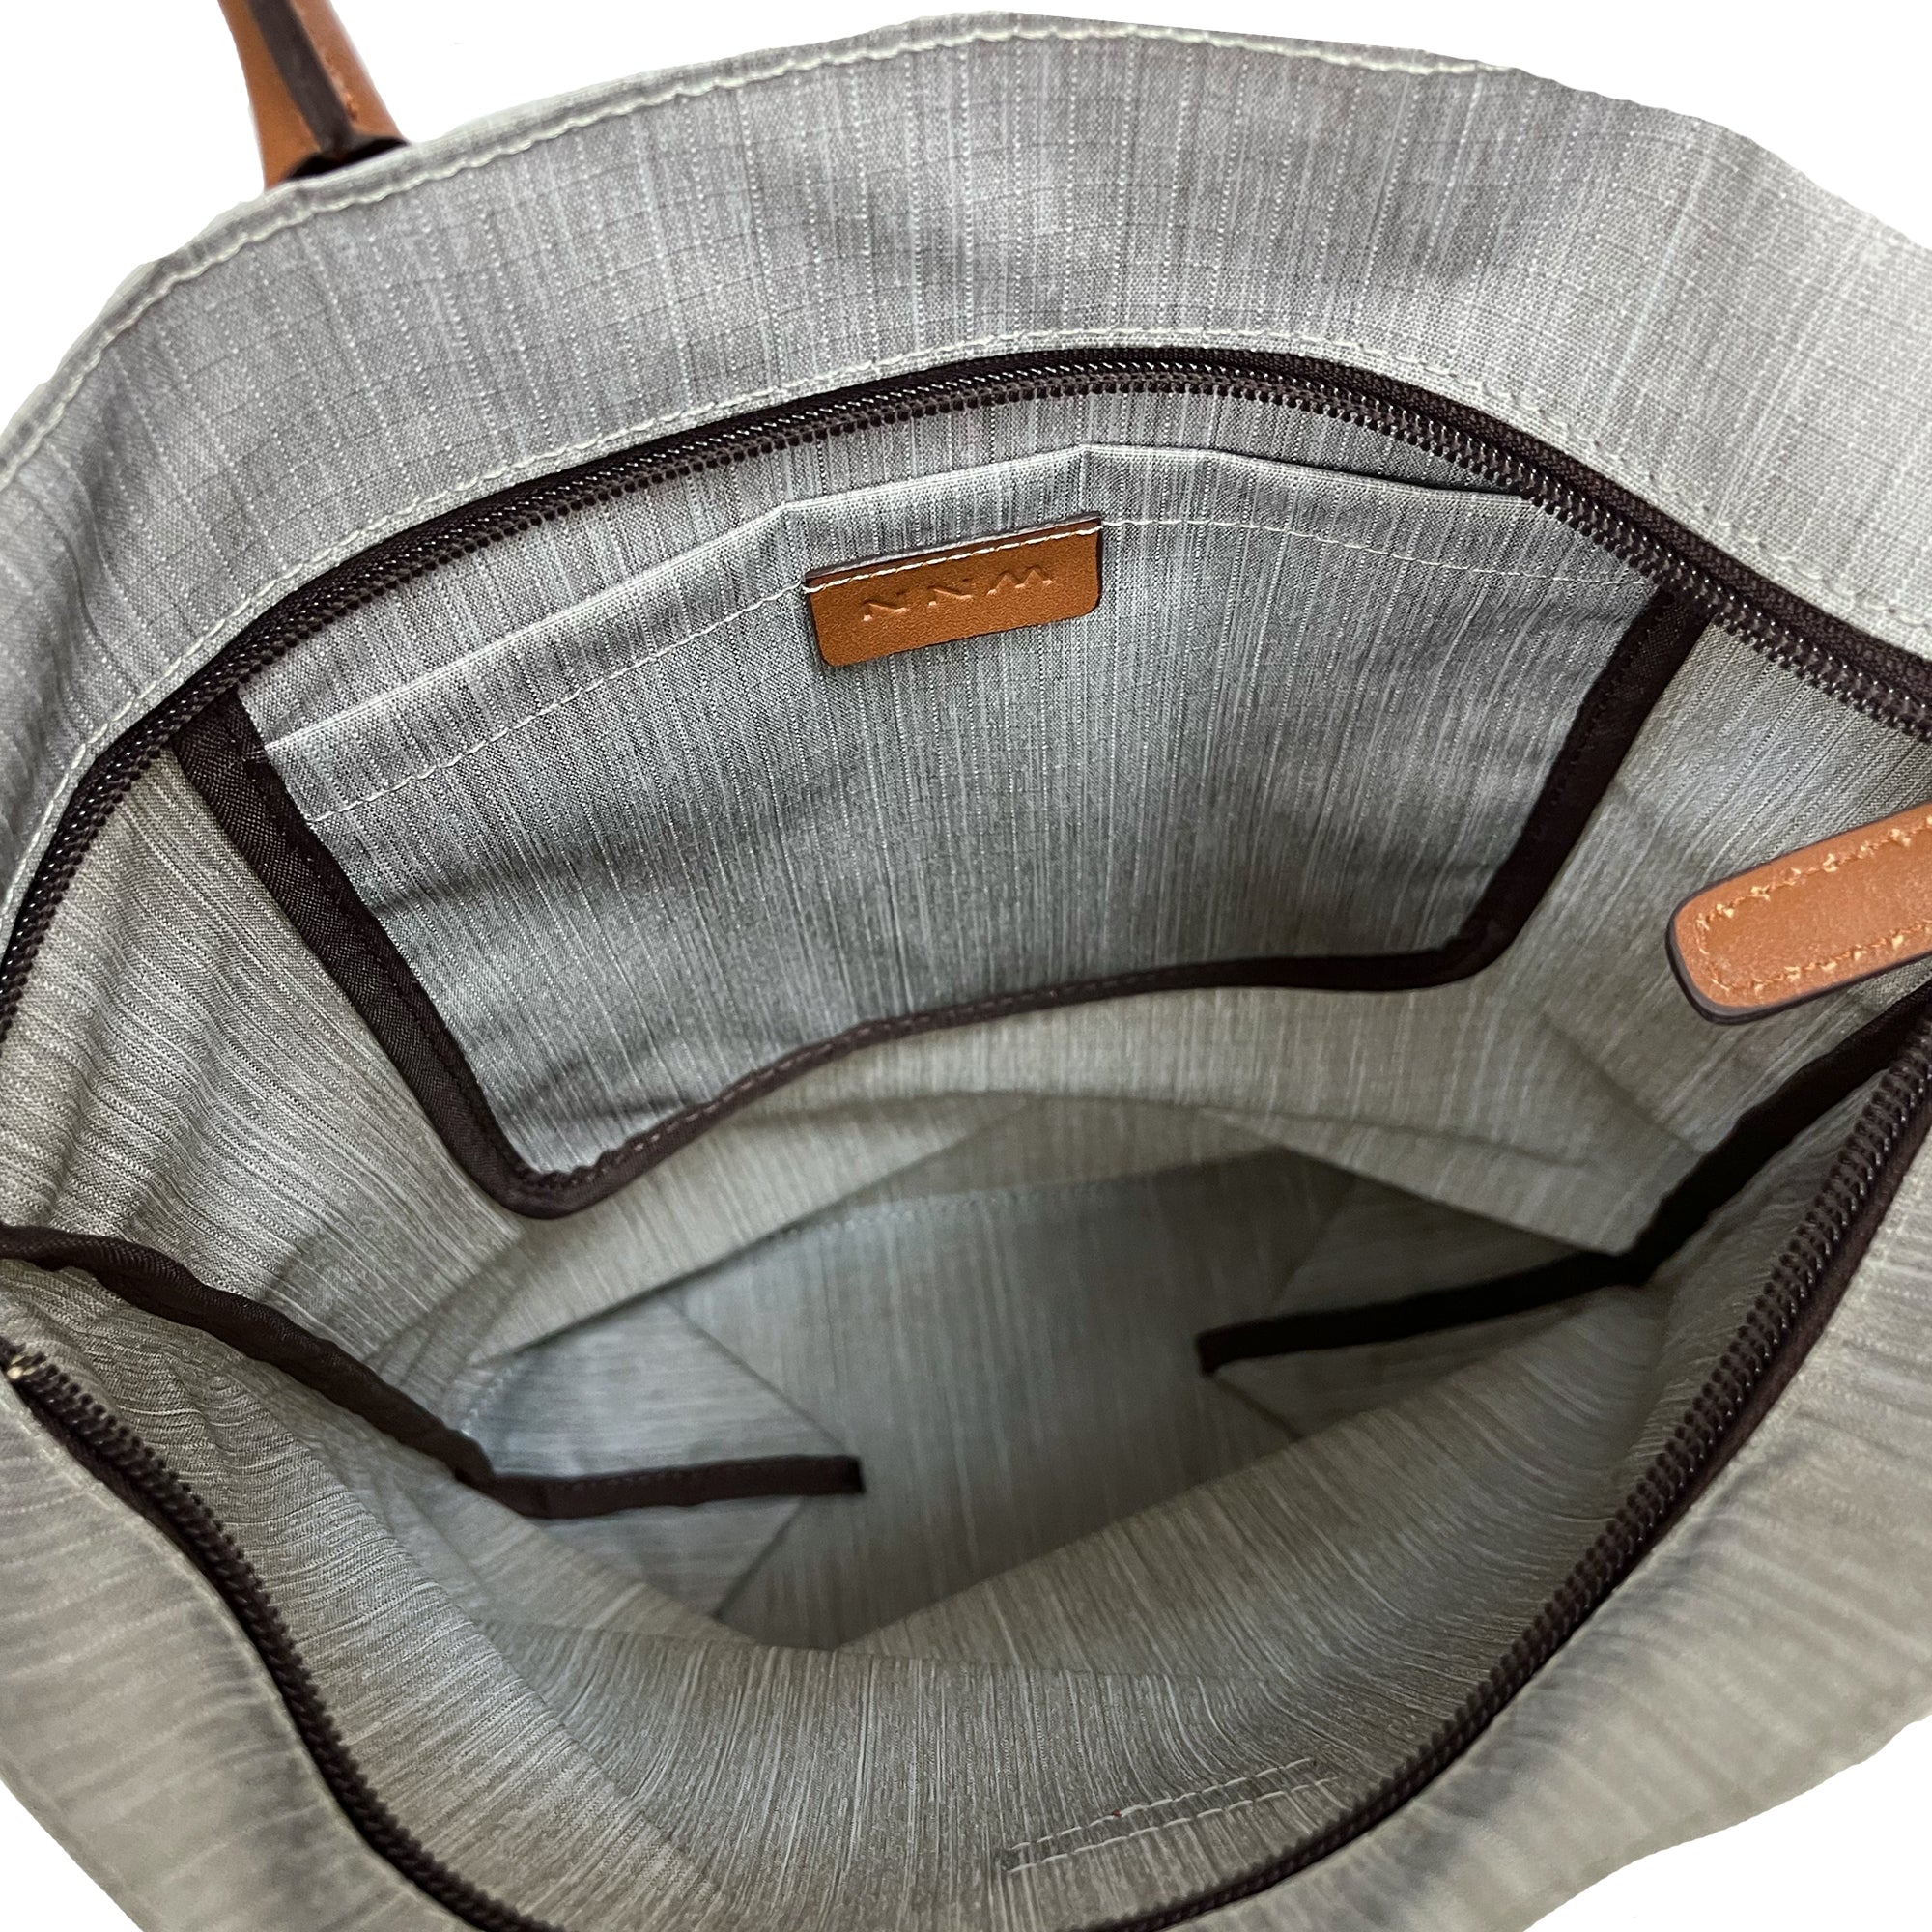 NNM | Foldable Bag • V 